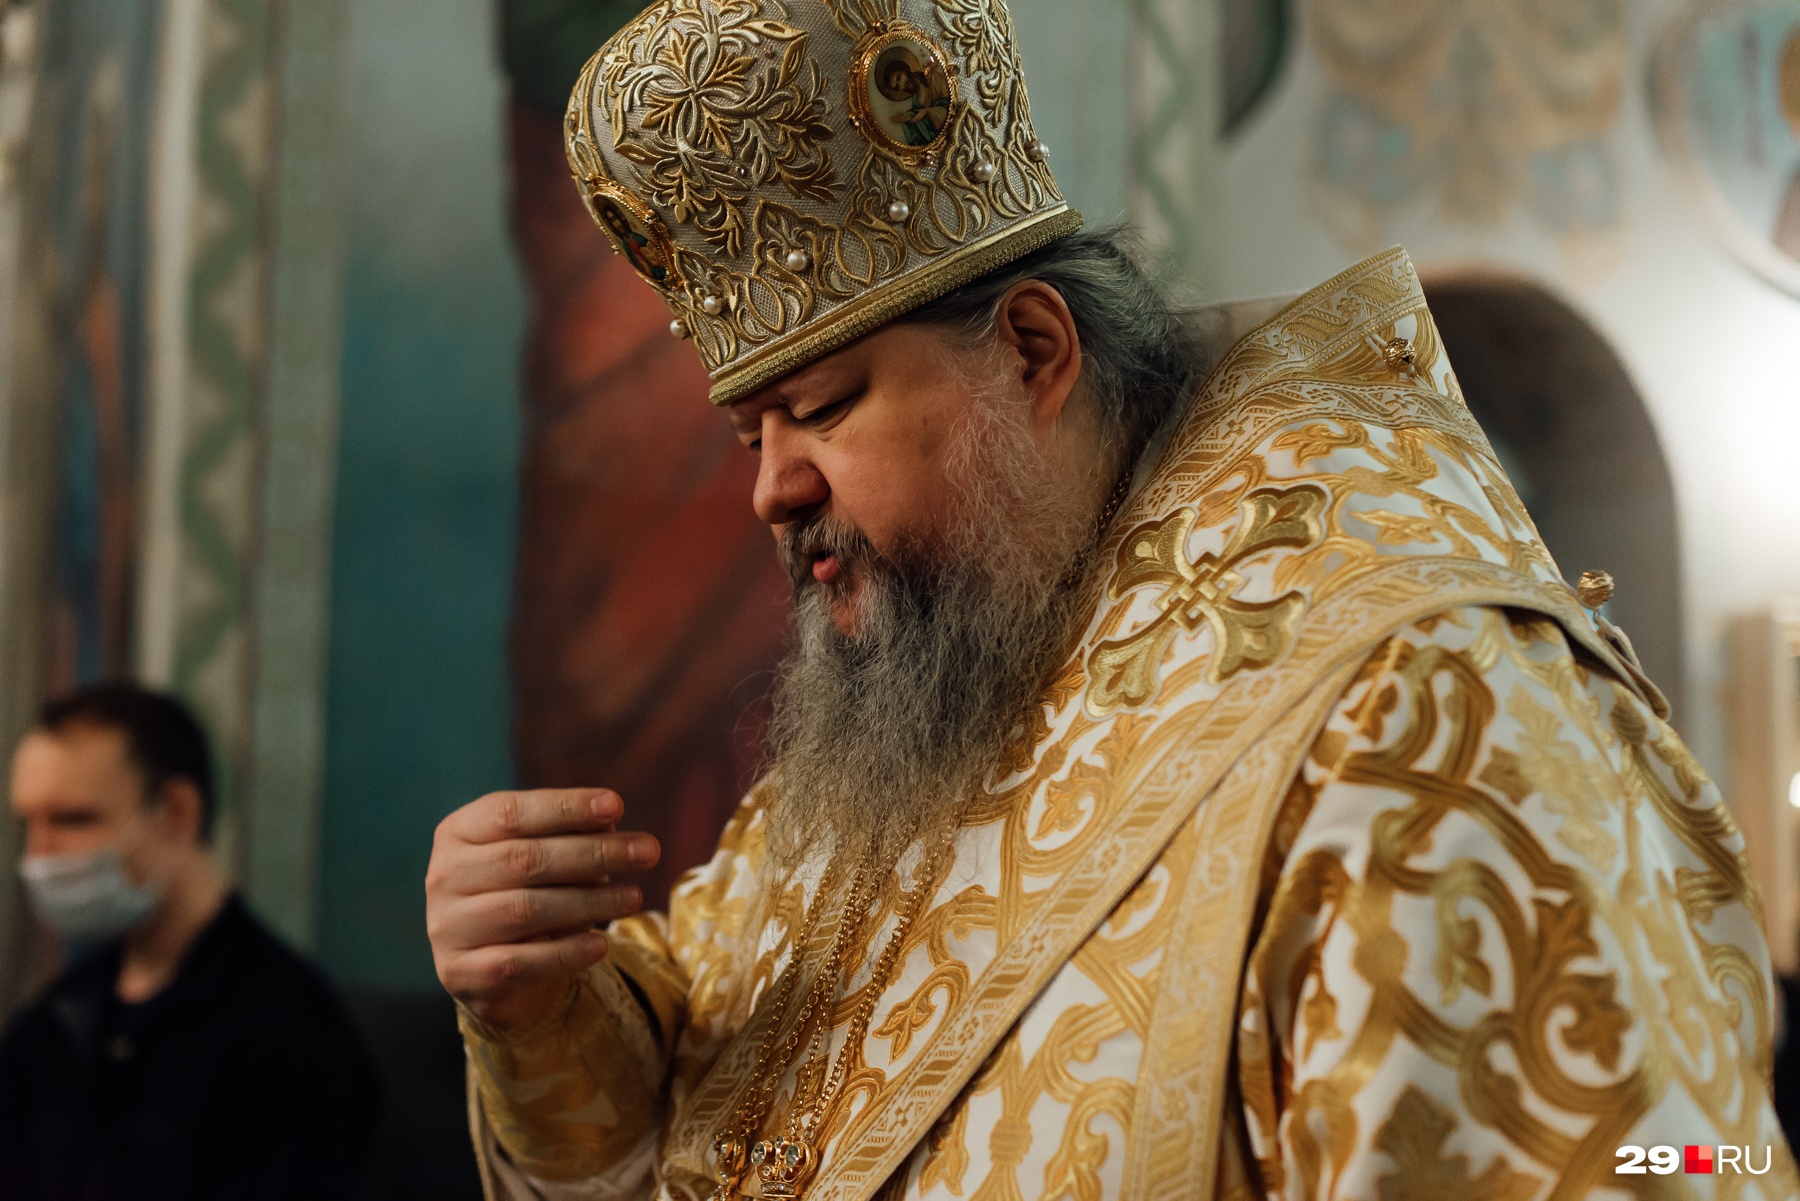 Глава Архангельской епархии митрополит Корнилий в своем праздничном послании процитировал патриарха Кирилла, который говорил, что пандемия — это сигнал от самого Господа